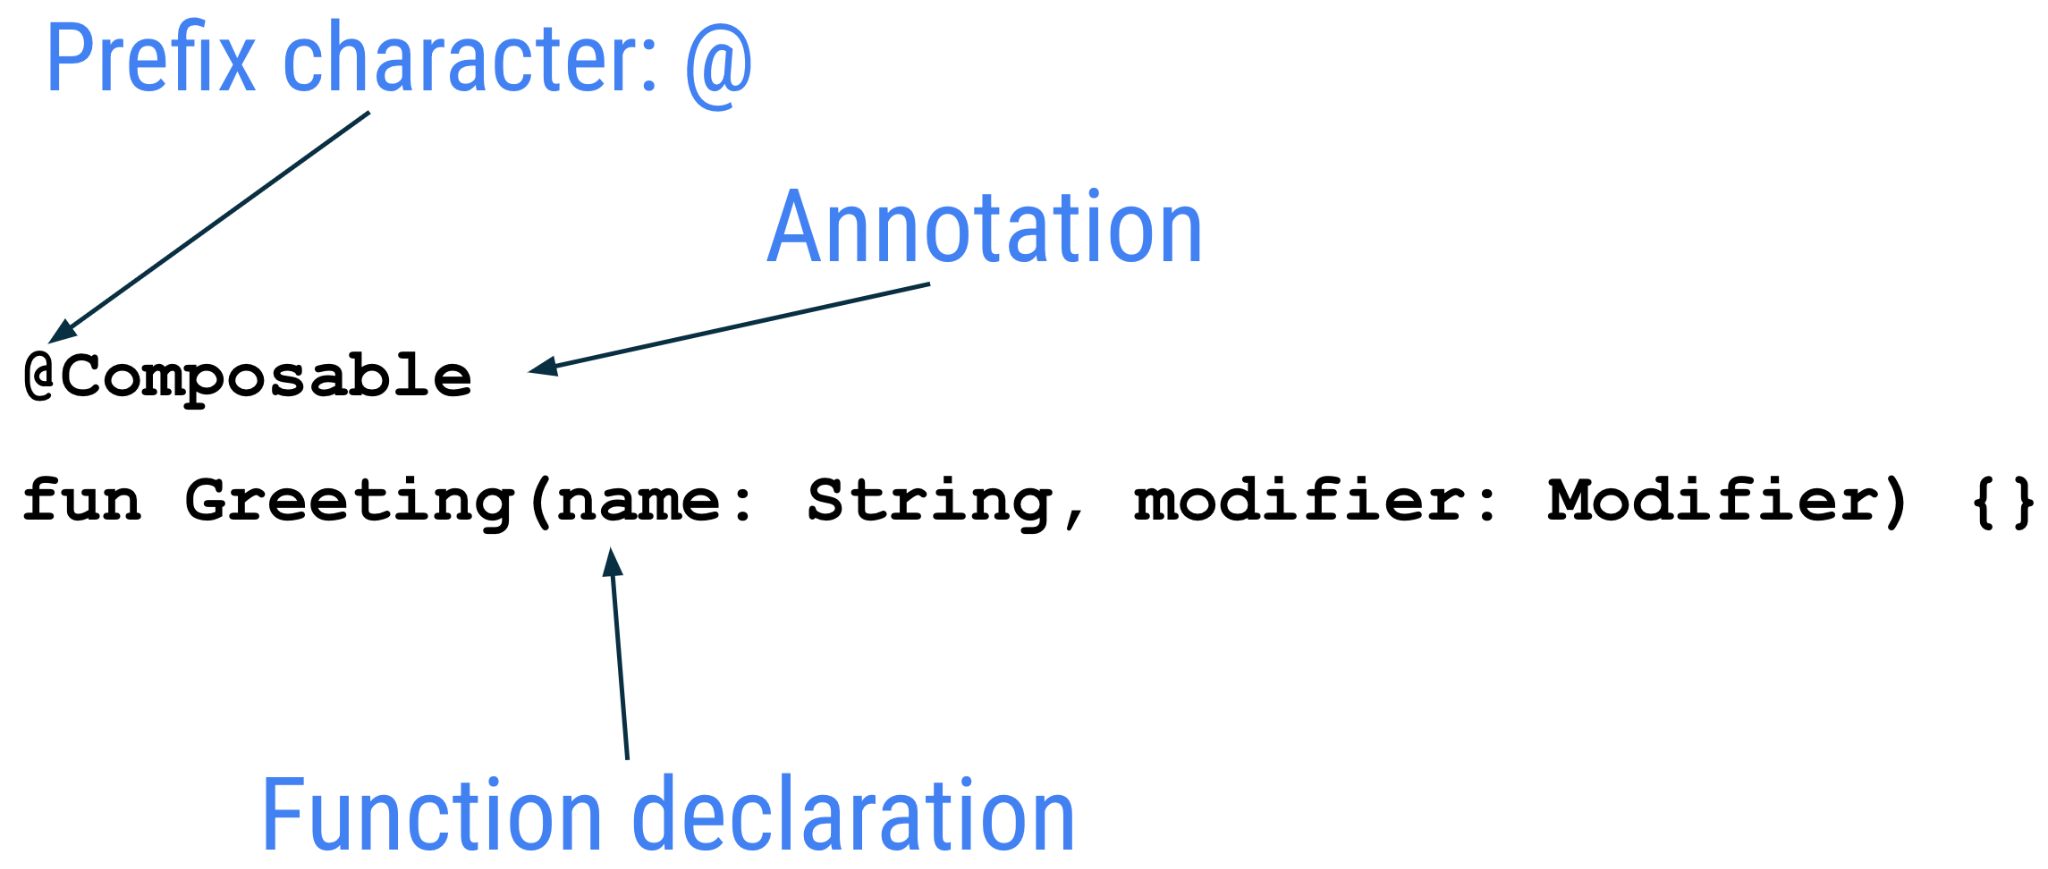 示意图，显示了可组合函数的详解，其中前缀字符 @ 注解是可组合项，后跟函数声明。